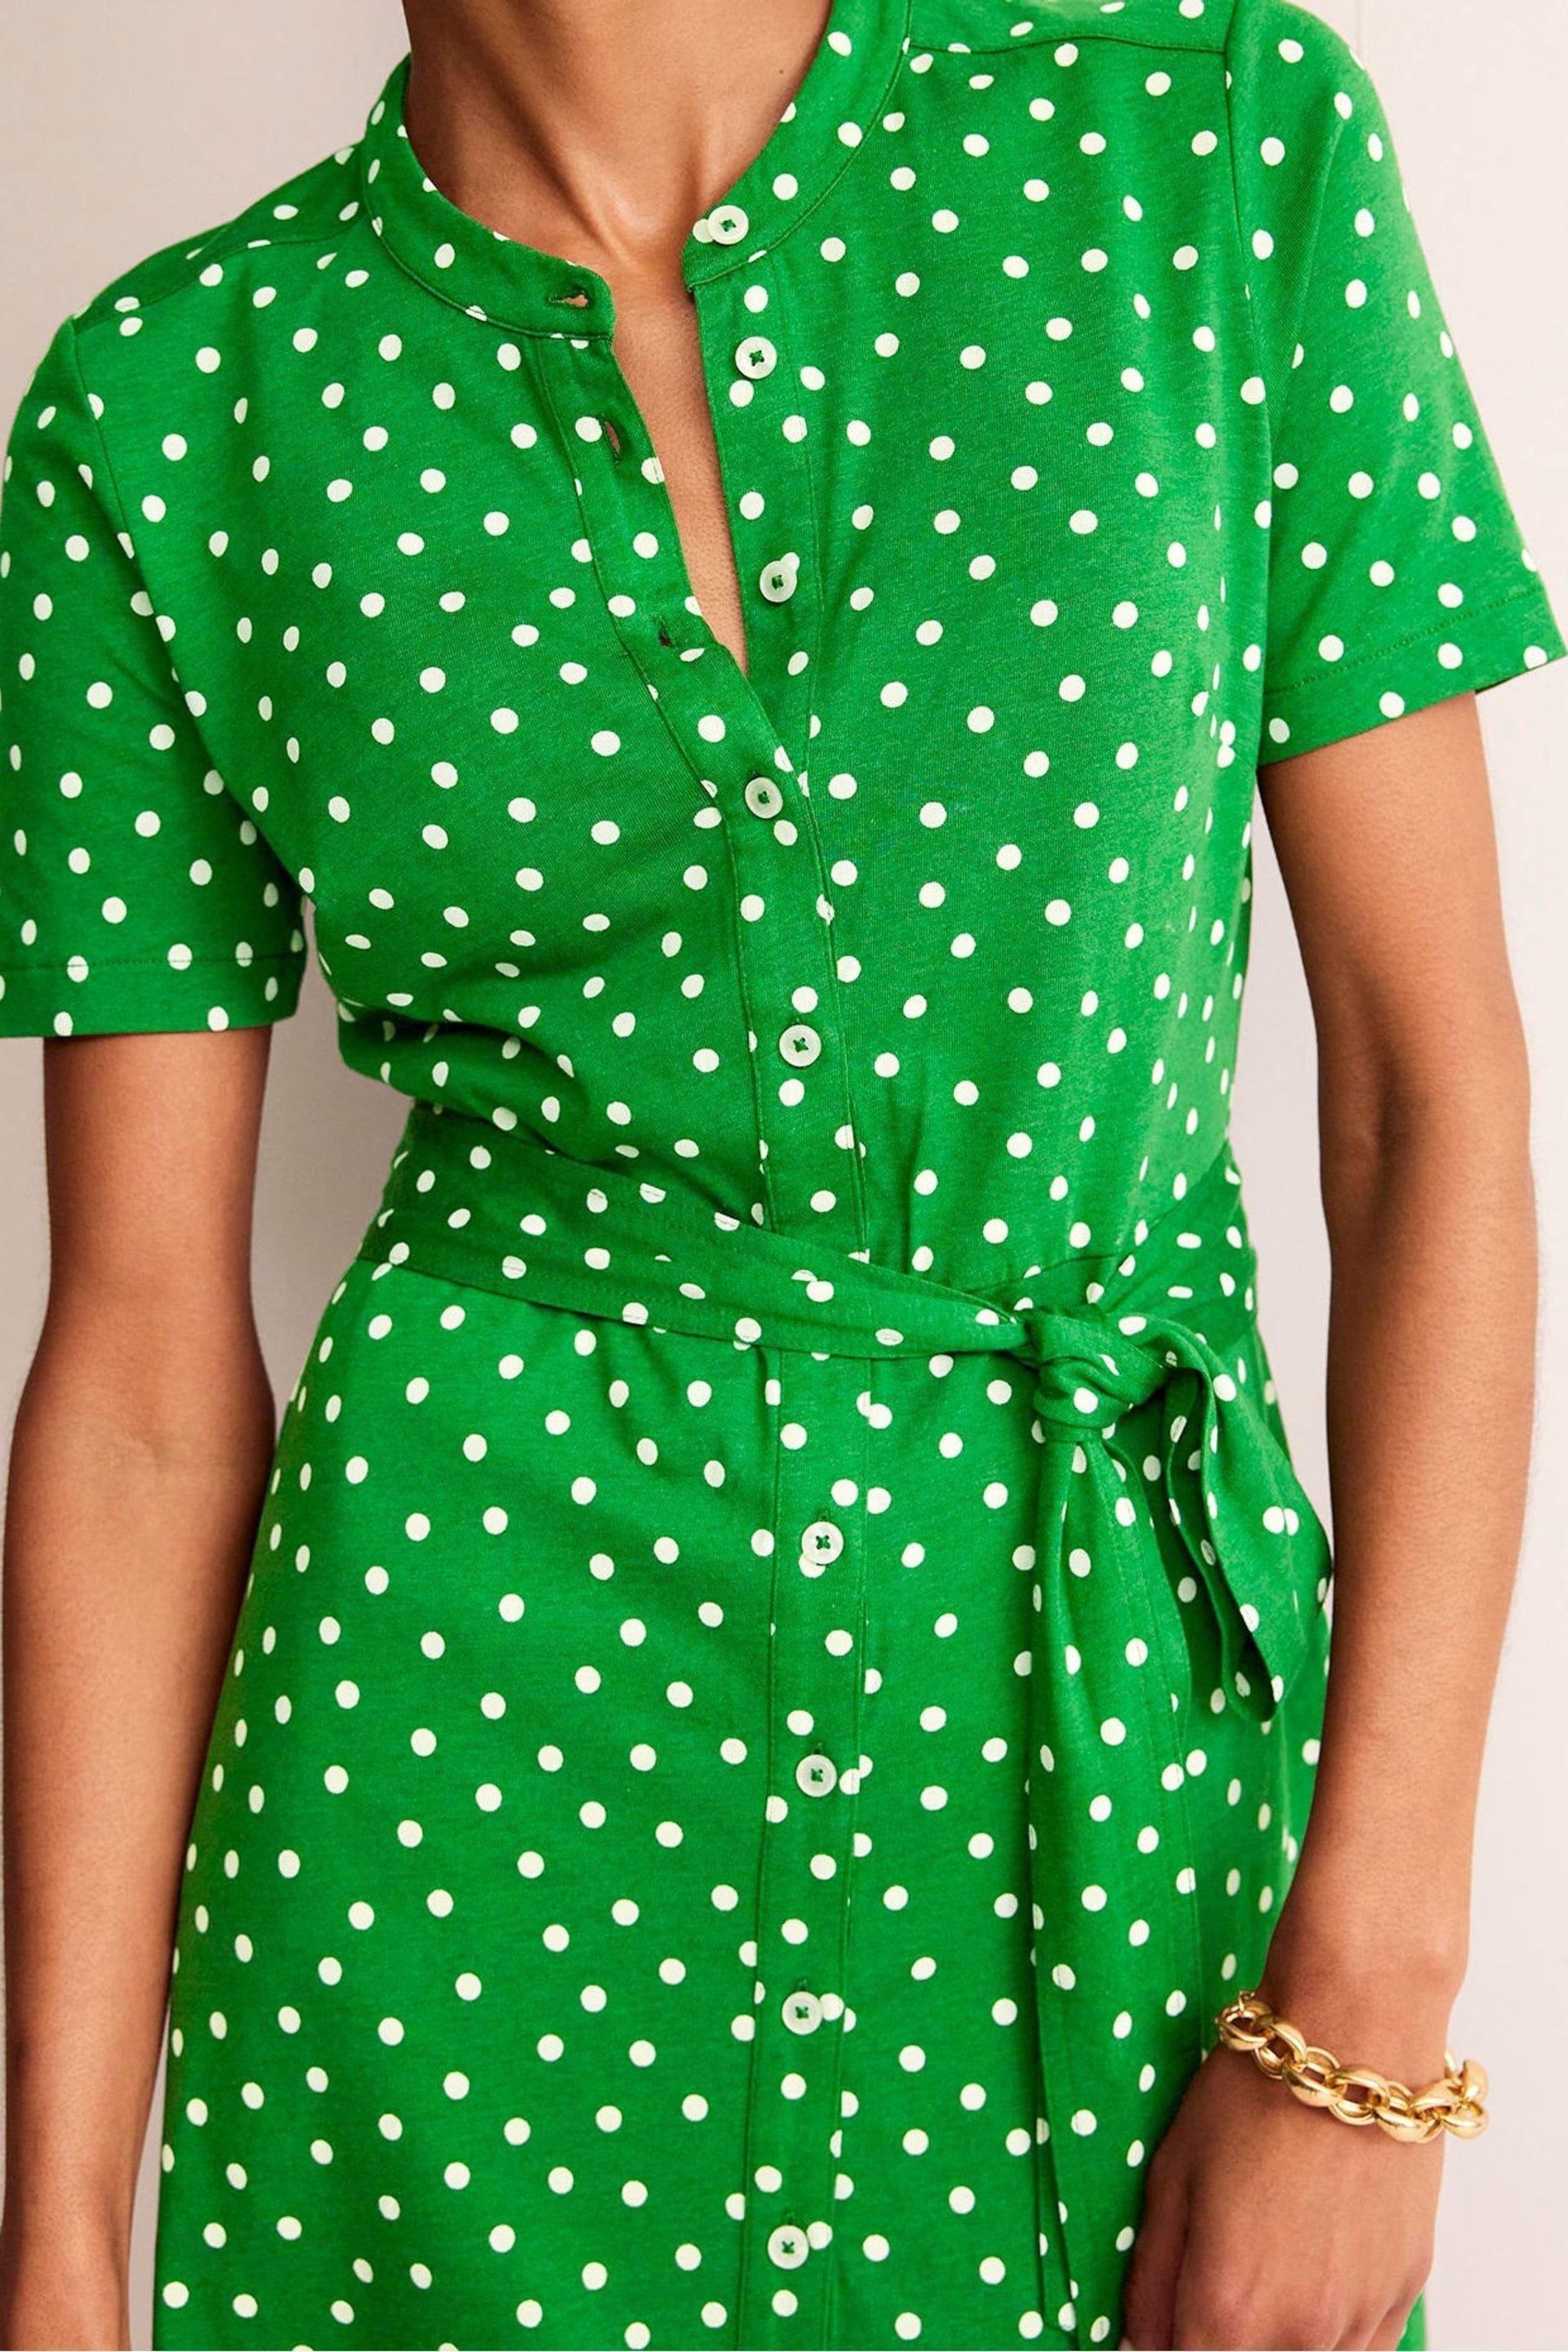 Boden Green Petite Julia Short Sleeve Shirt Dress - Image 2 of 5